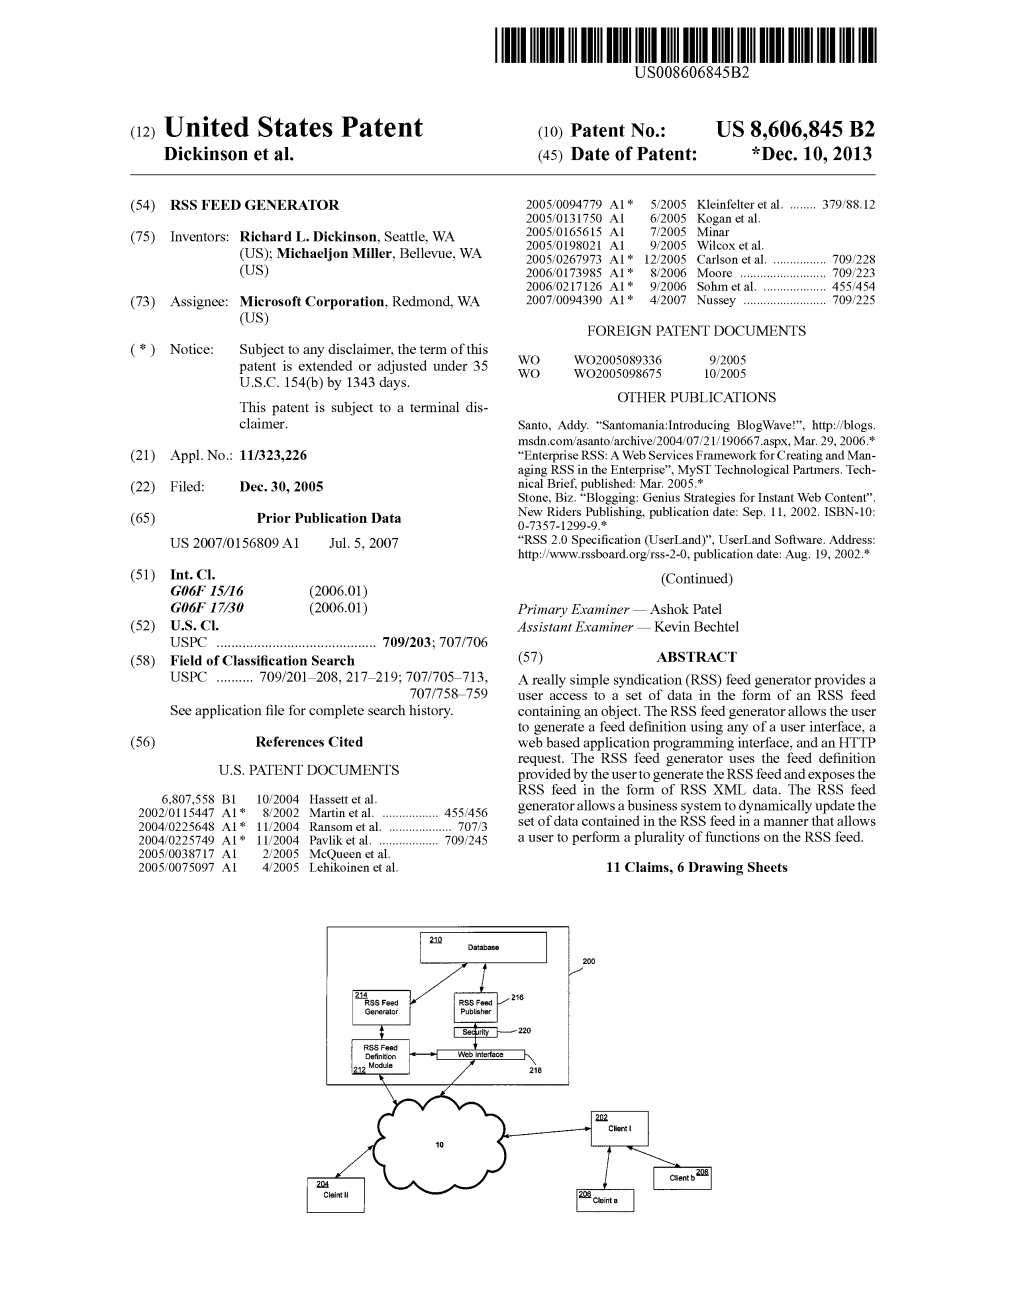 (12) United States Patent (10) Patent No.: US 8,606,845 B2 Dickinson Et Al